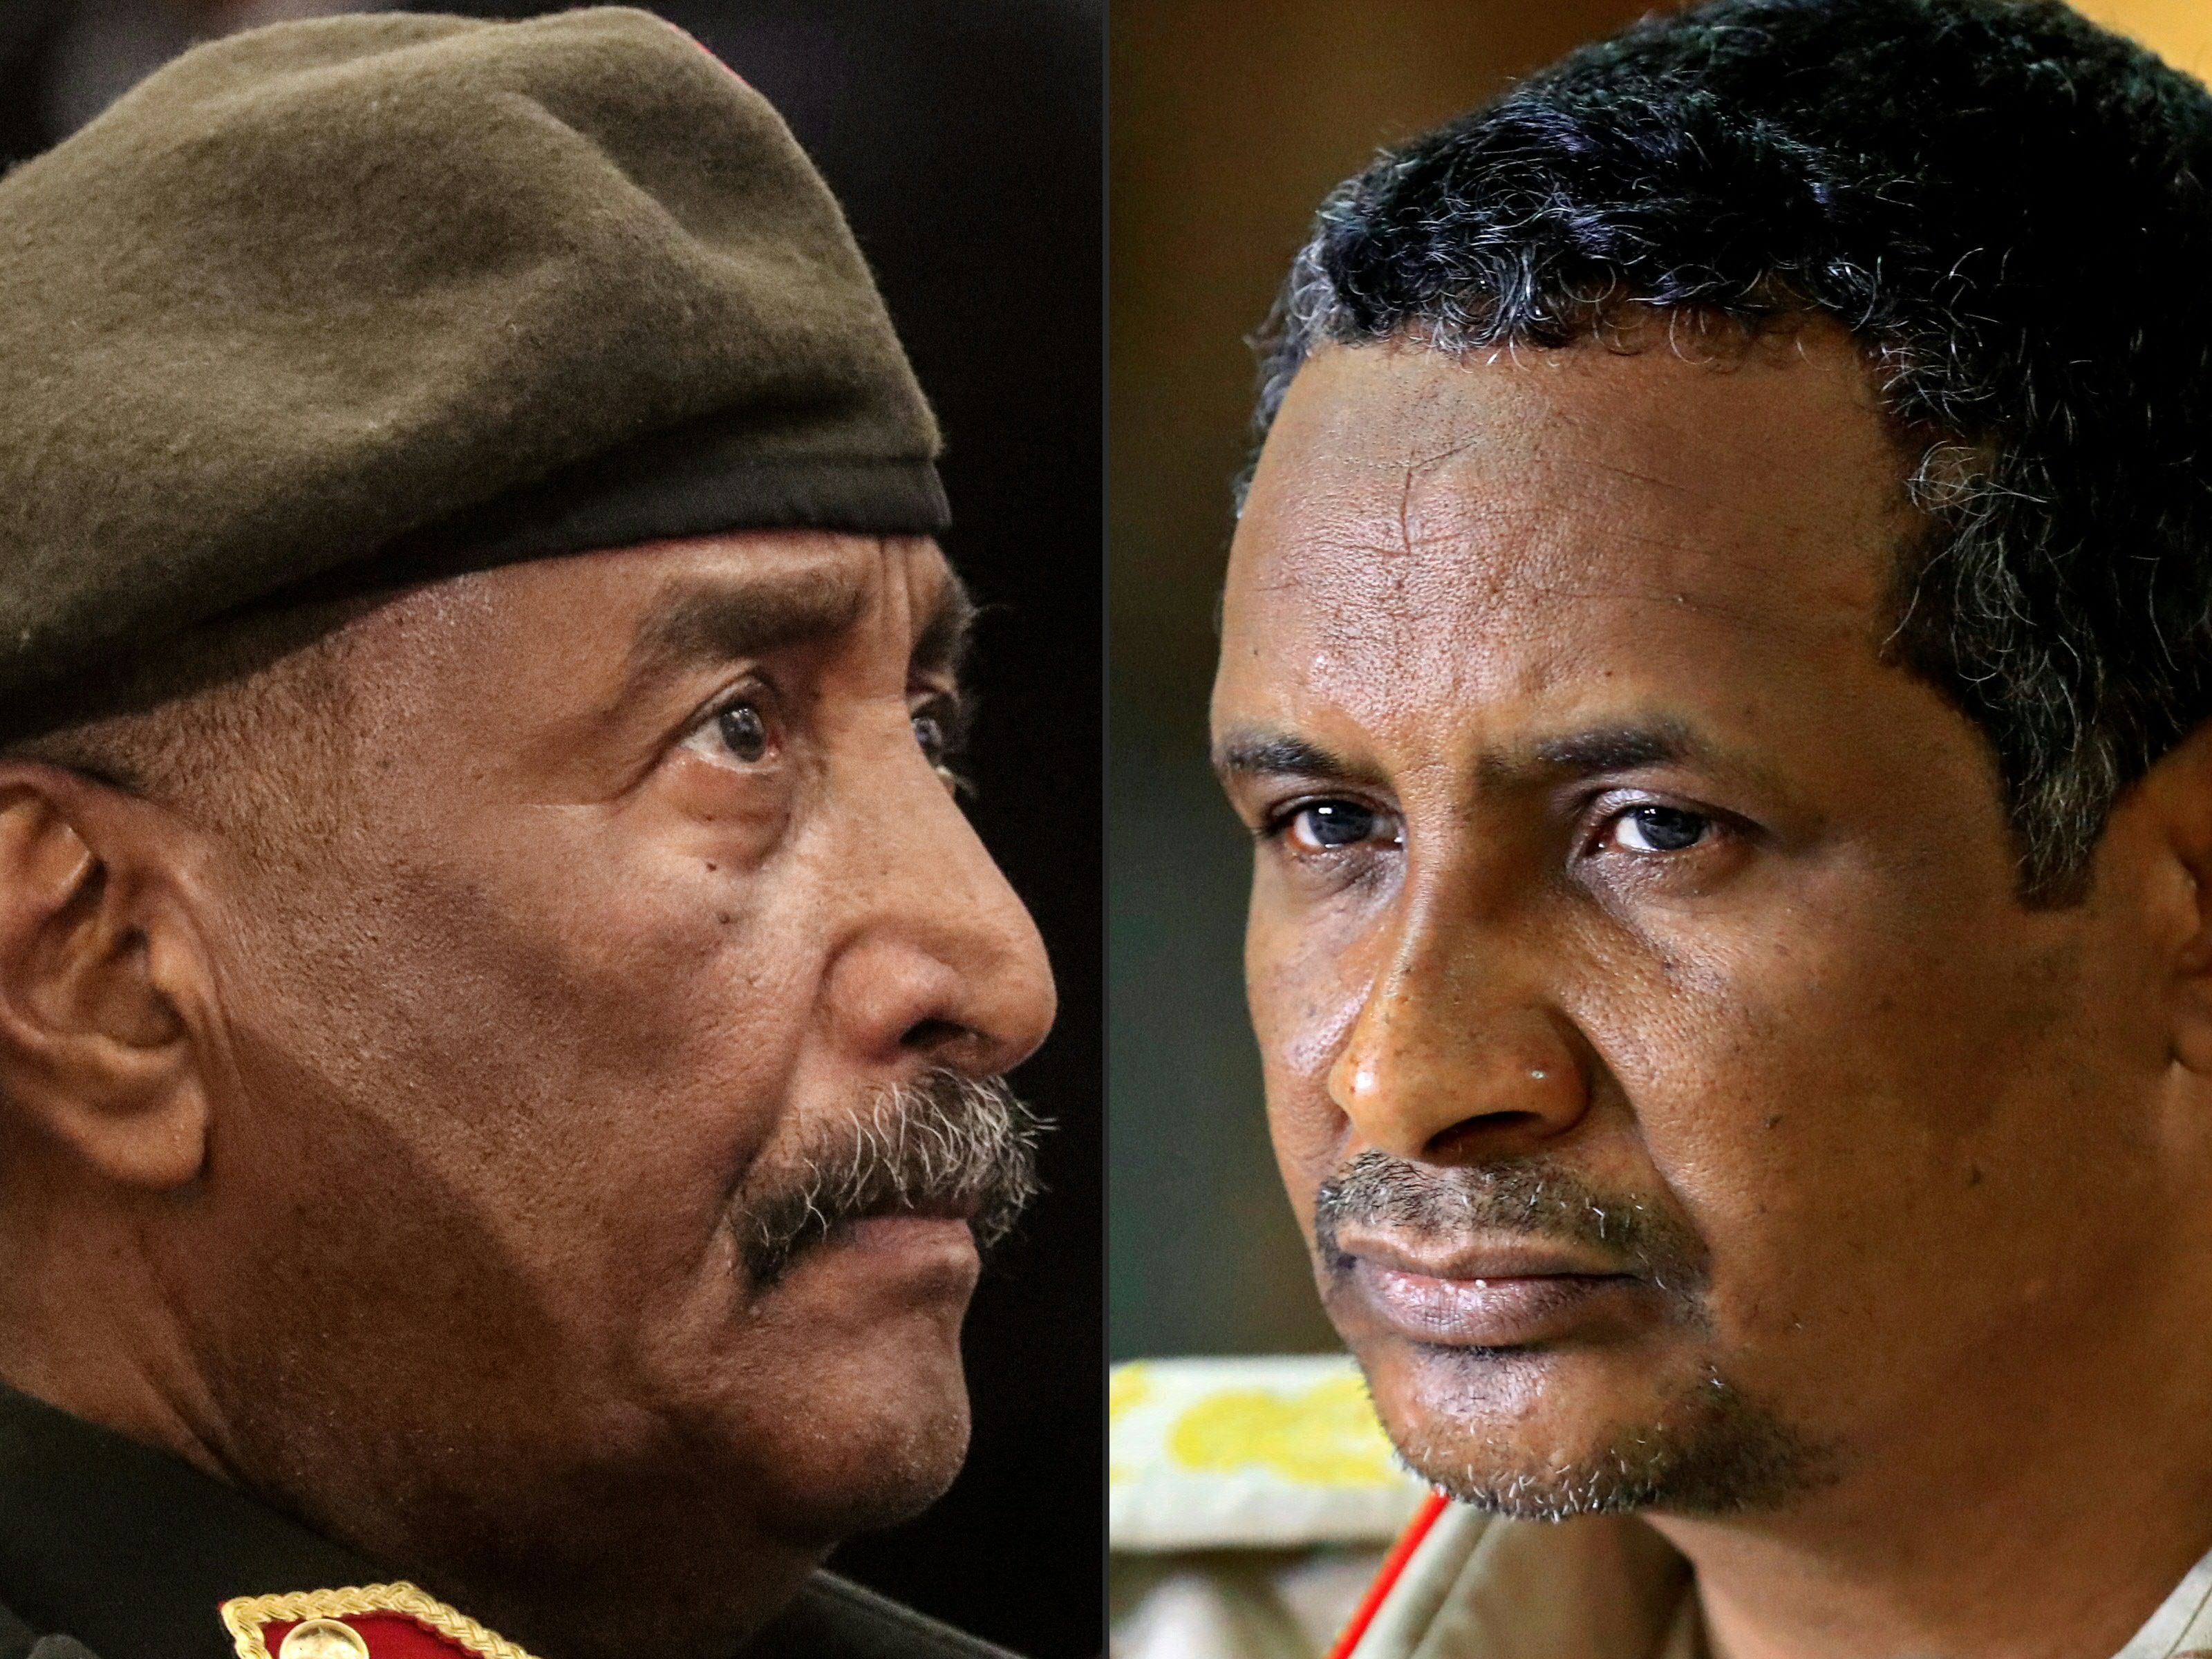 El jefe del ejército de Sudán, Abdel Fattah al-Burhan (izq.) y el comandante de las Fuerzas de Apoyo Rápido paramilitares de Sudán, el general Mohamed Hamdan Daglo (Hemedti), intensificaron combates por segundo día el 16 de abril después de las batallas mortales entre los generales rivales en el control desde su golpe de estado de 2021. 